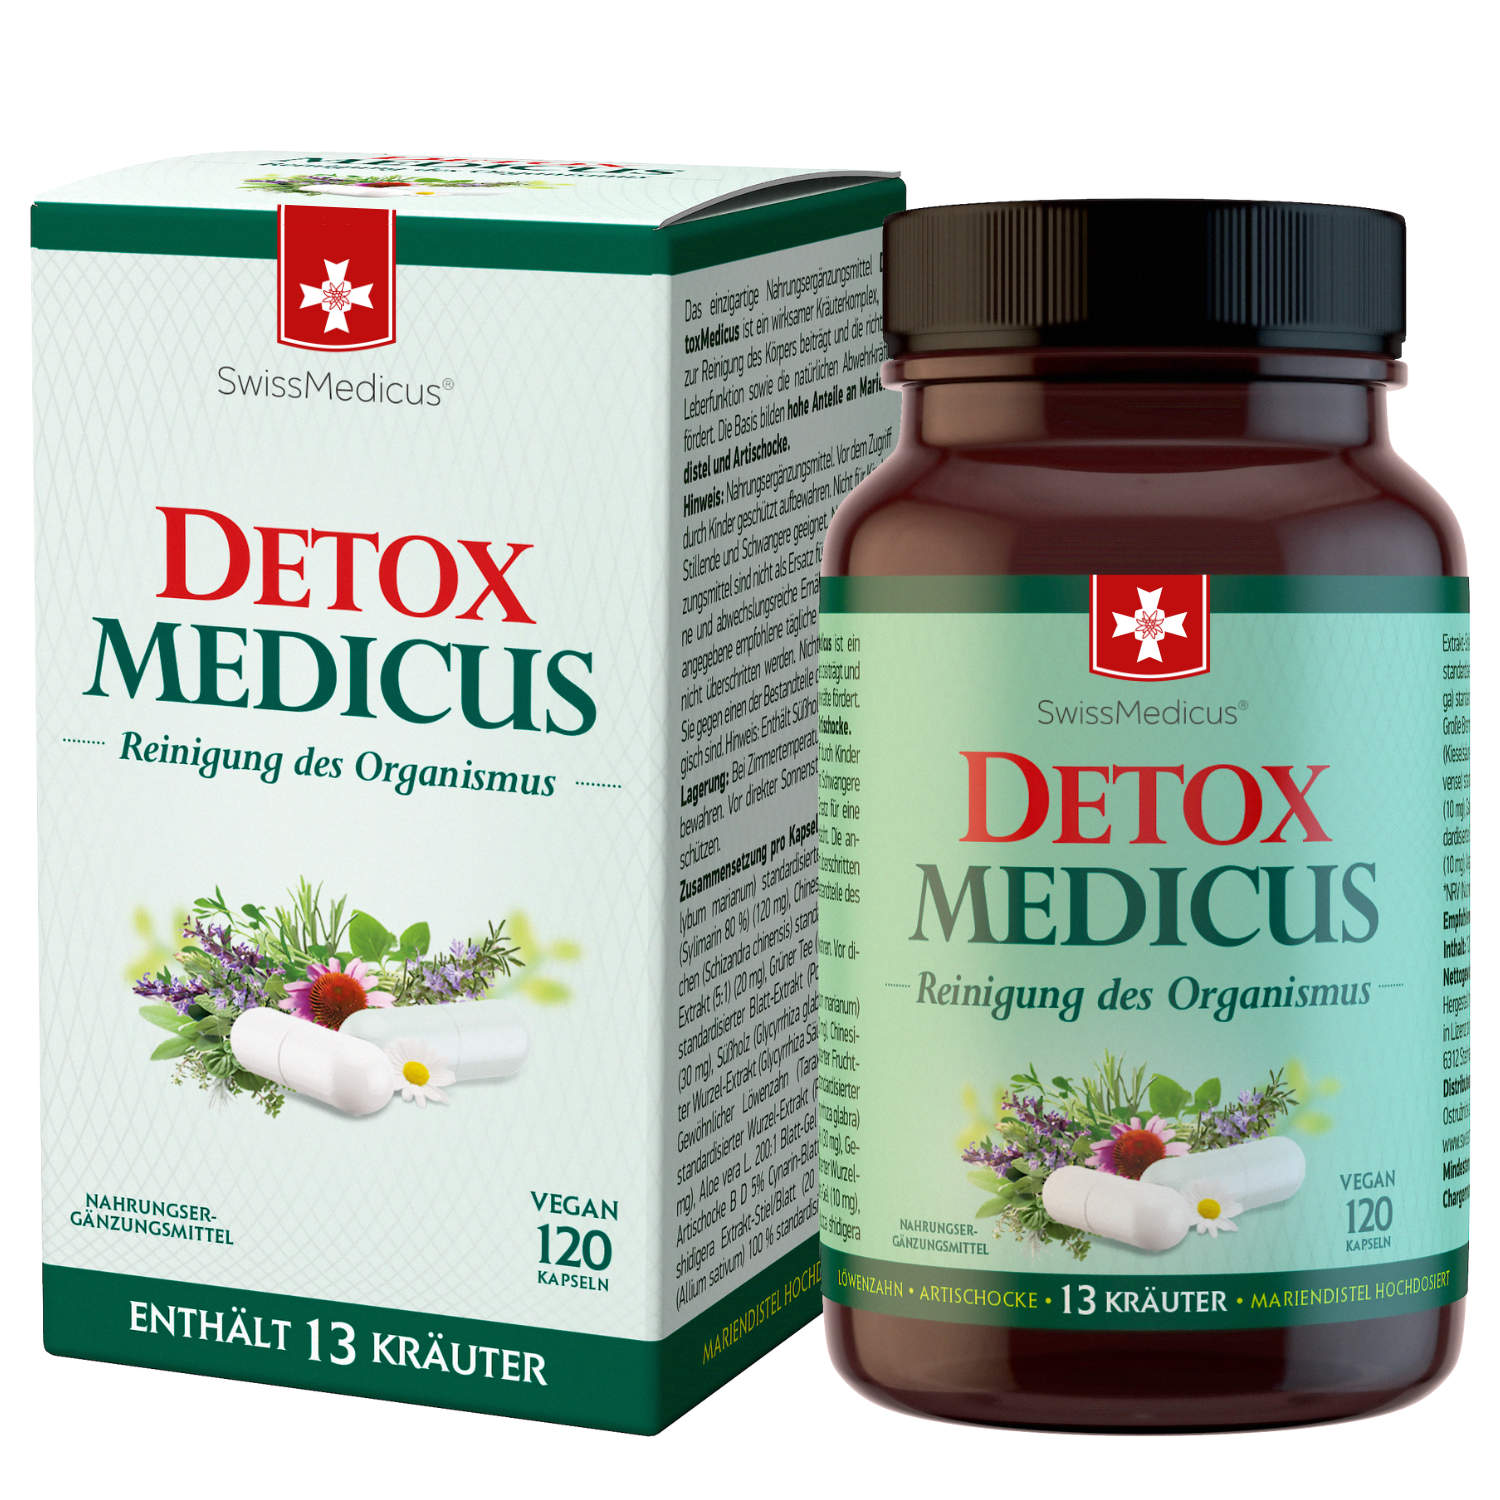 DetoxMedicus 120 capsules